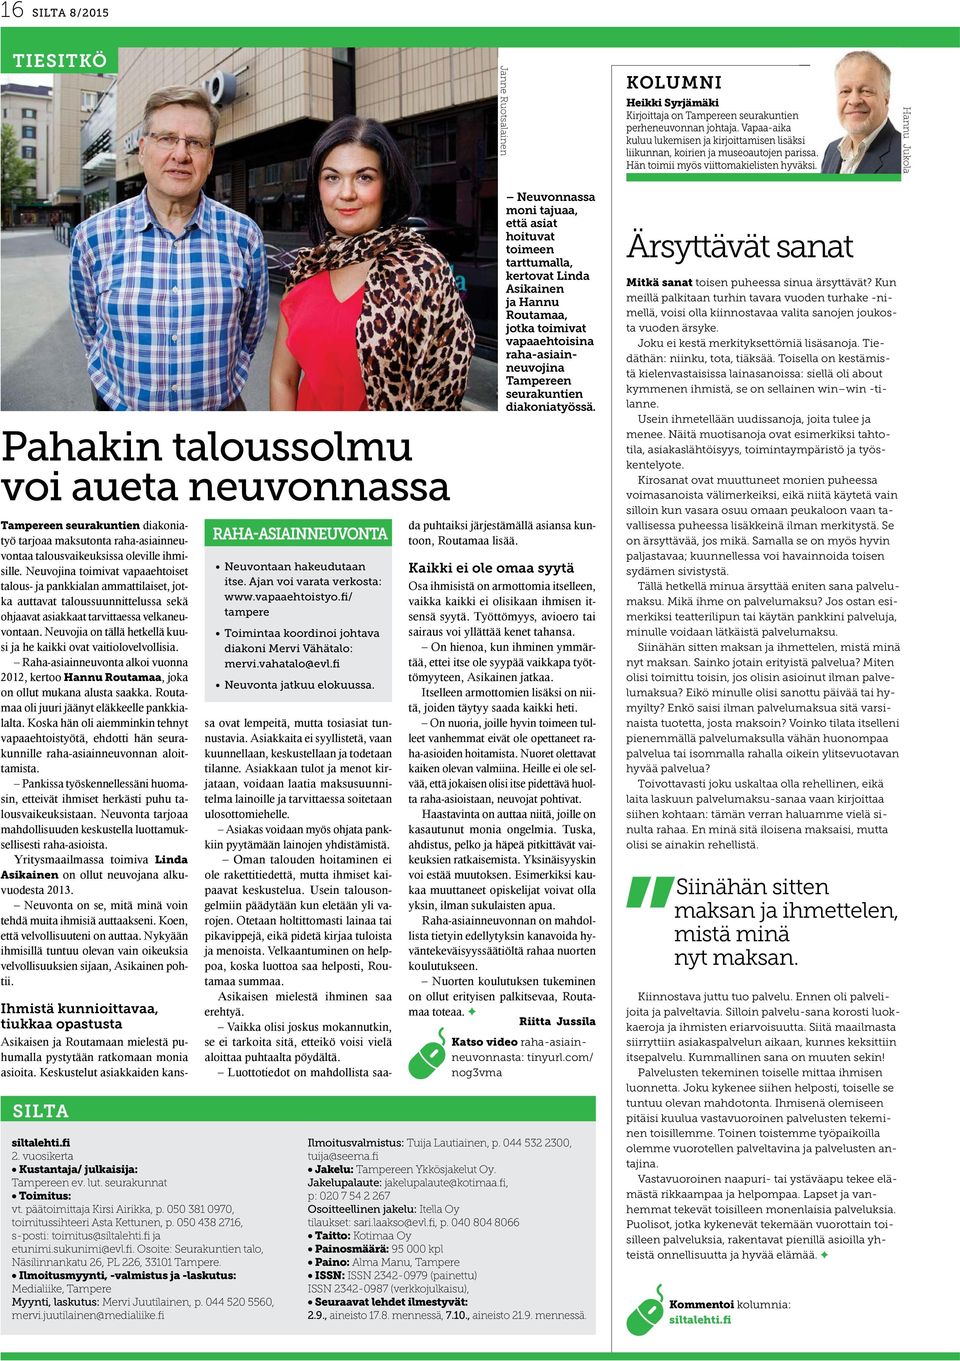 Hannu Jukola Pahakin taloussolmu voi aueta neuvonnassa Tampereen seurakuntien diakoniatyö tarjoaa maksutonta raha-asiainneuvontaa talousvaikeuksissa oleville ihmisille.